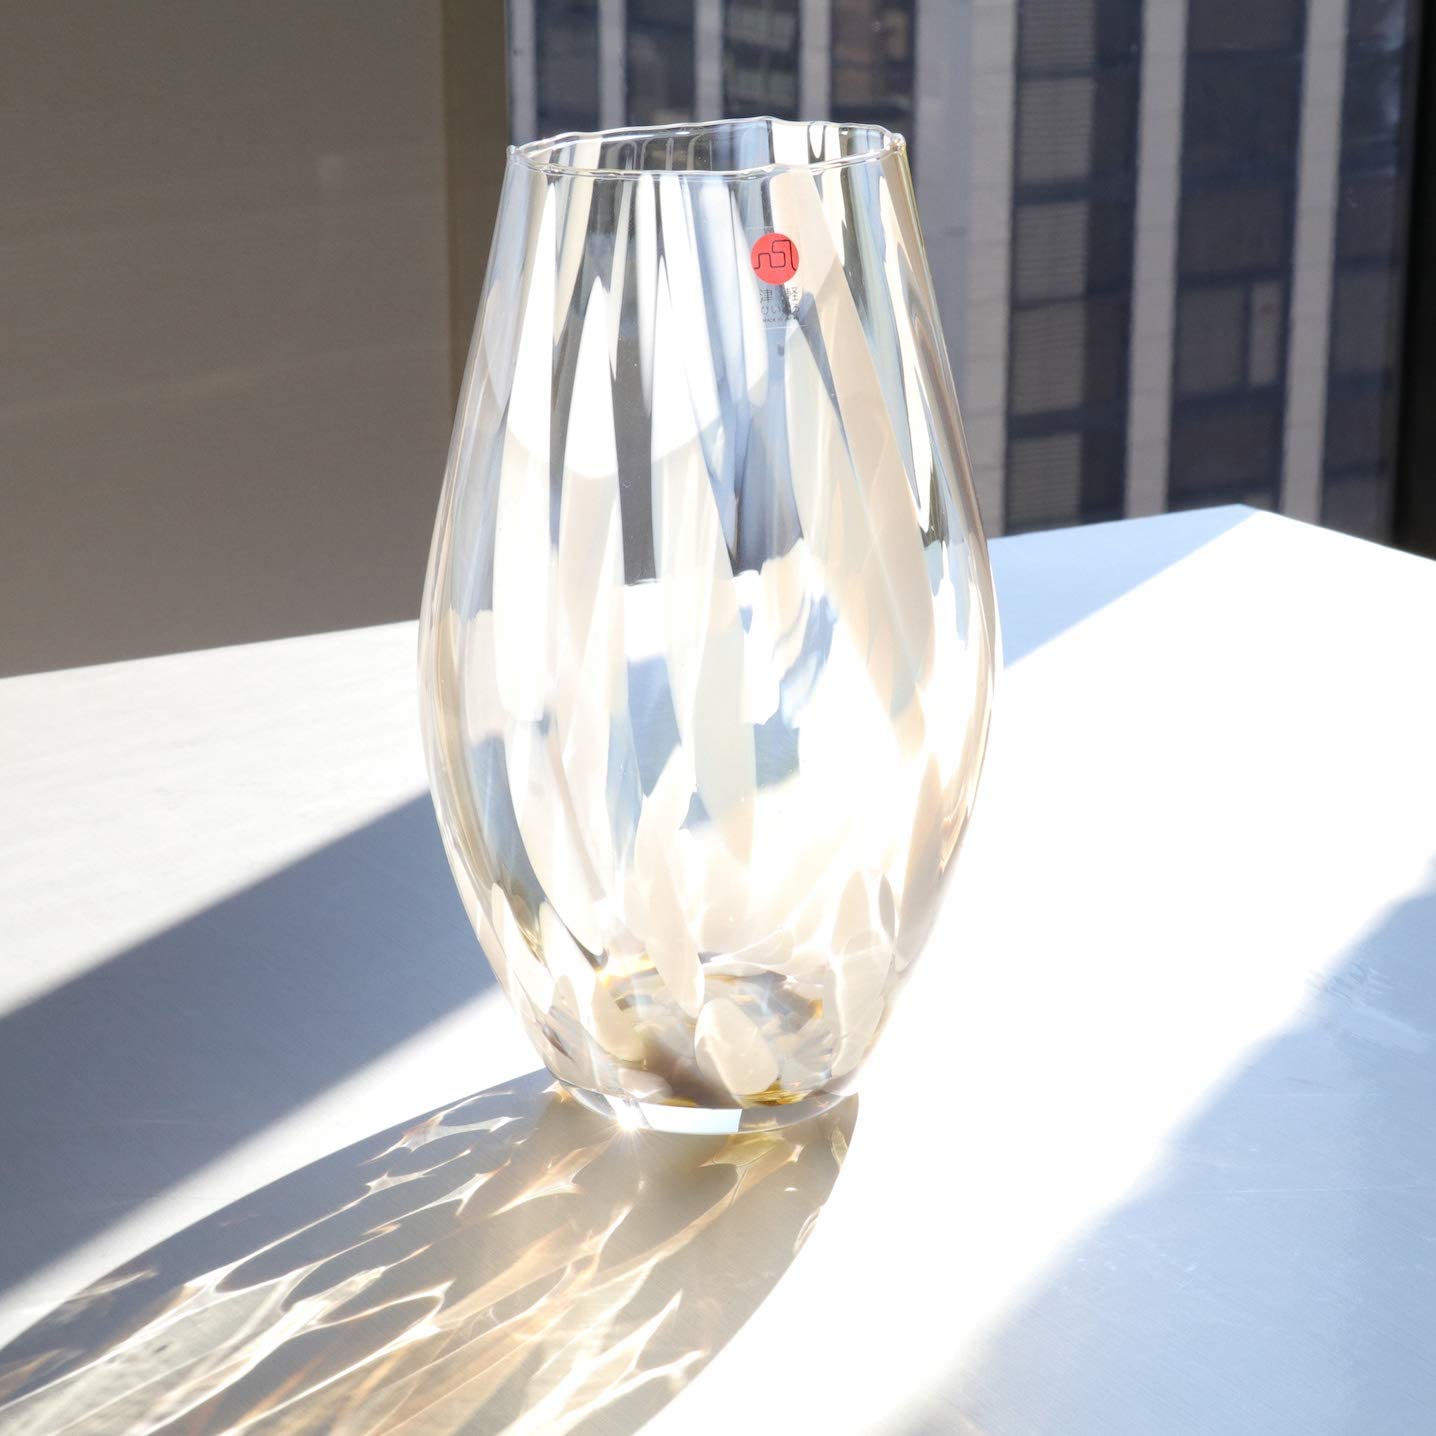 預訂｜全港免運｜Aderia - 津輕 日本製玻璃花瓶 大地 Vase｜《約10-14個工作天內寄出》